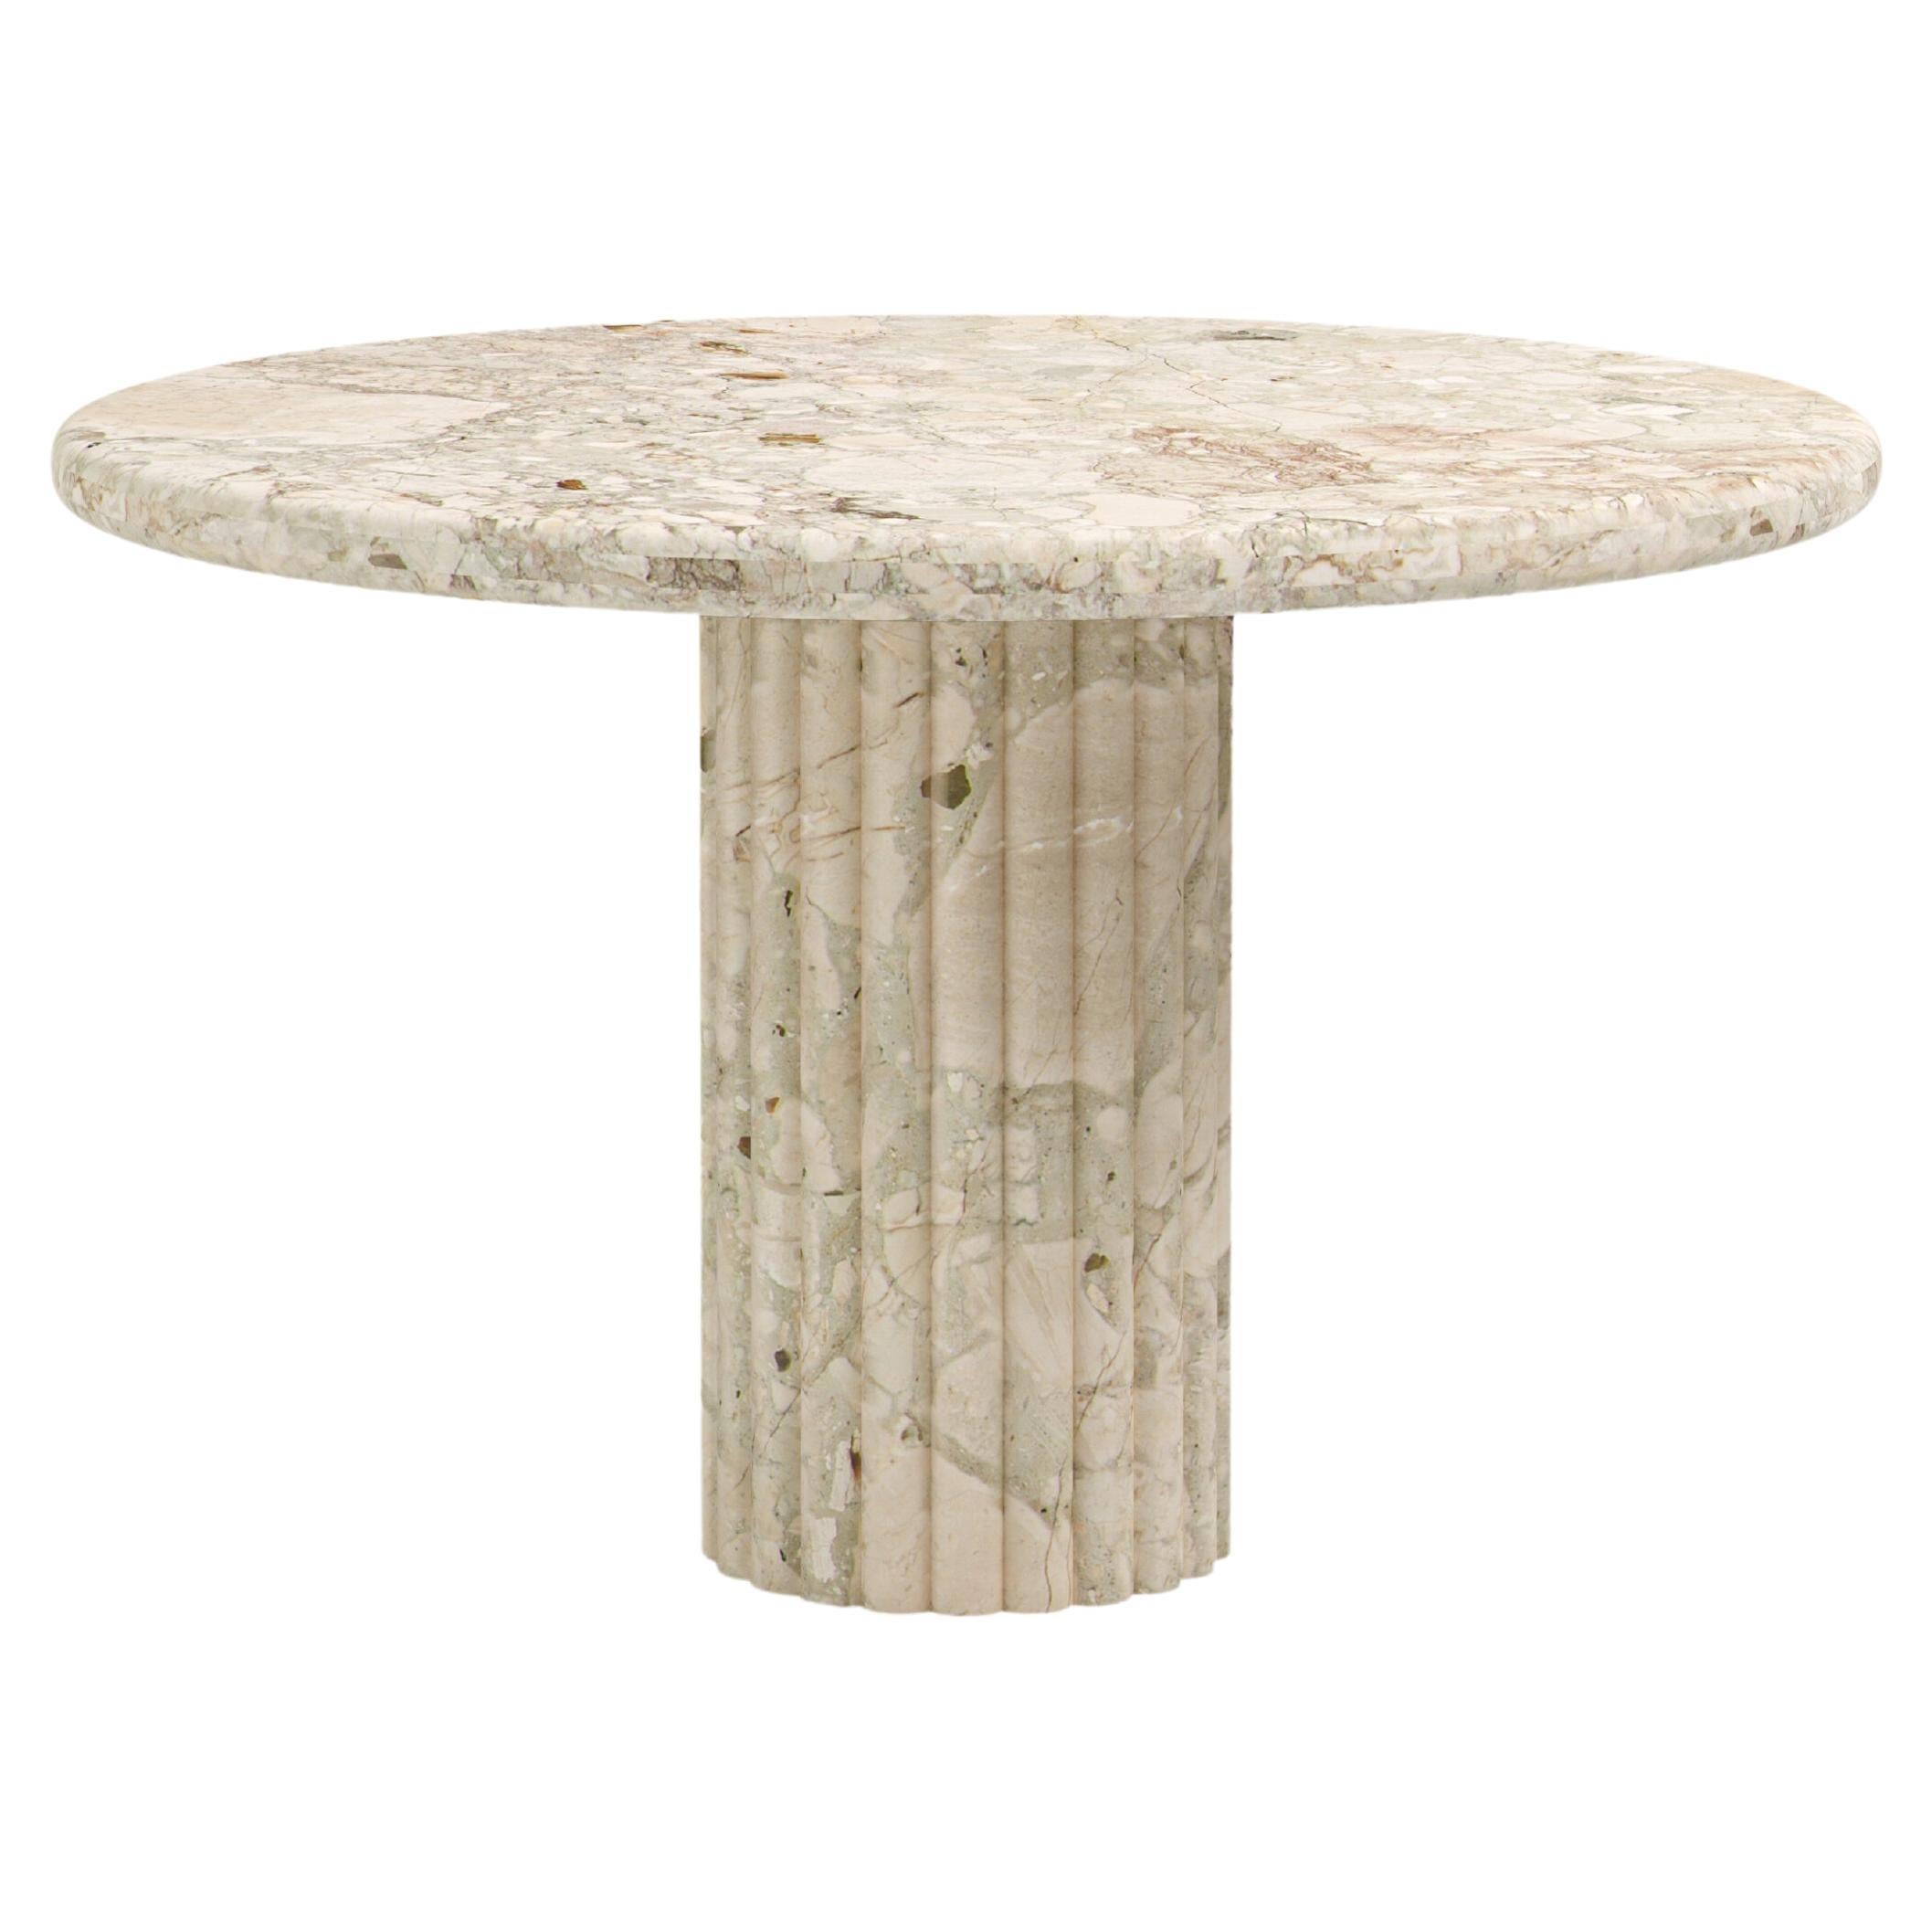 FORM(LA) Fluta Round Dining Table 48”L x 48”W x 30”H Breccia Rosa Marble For Sale